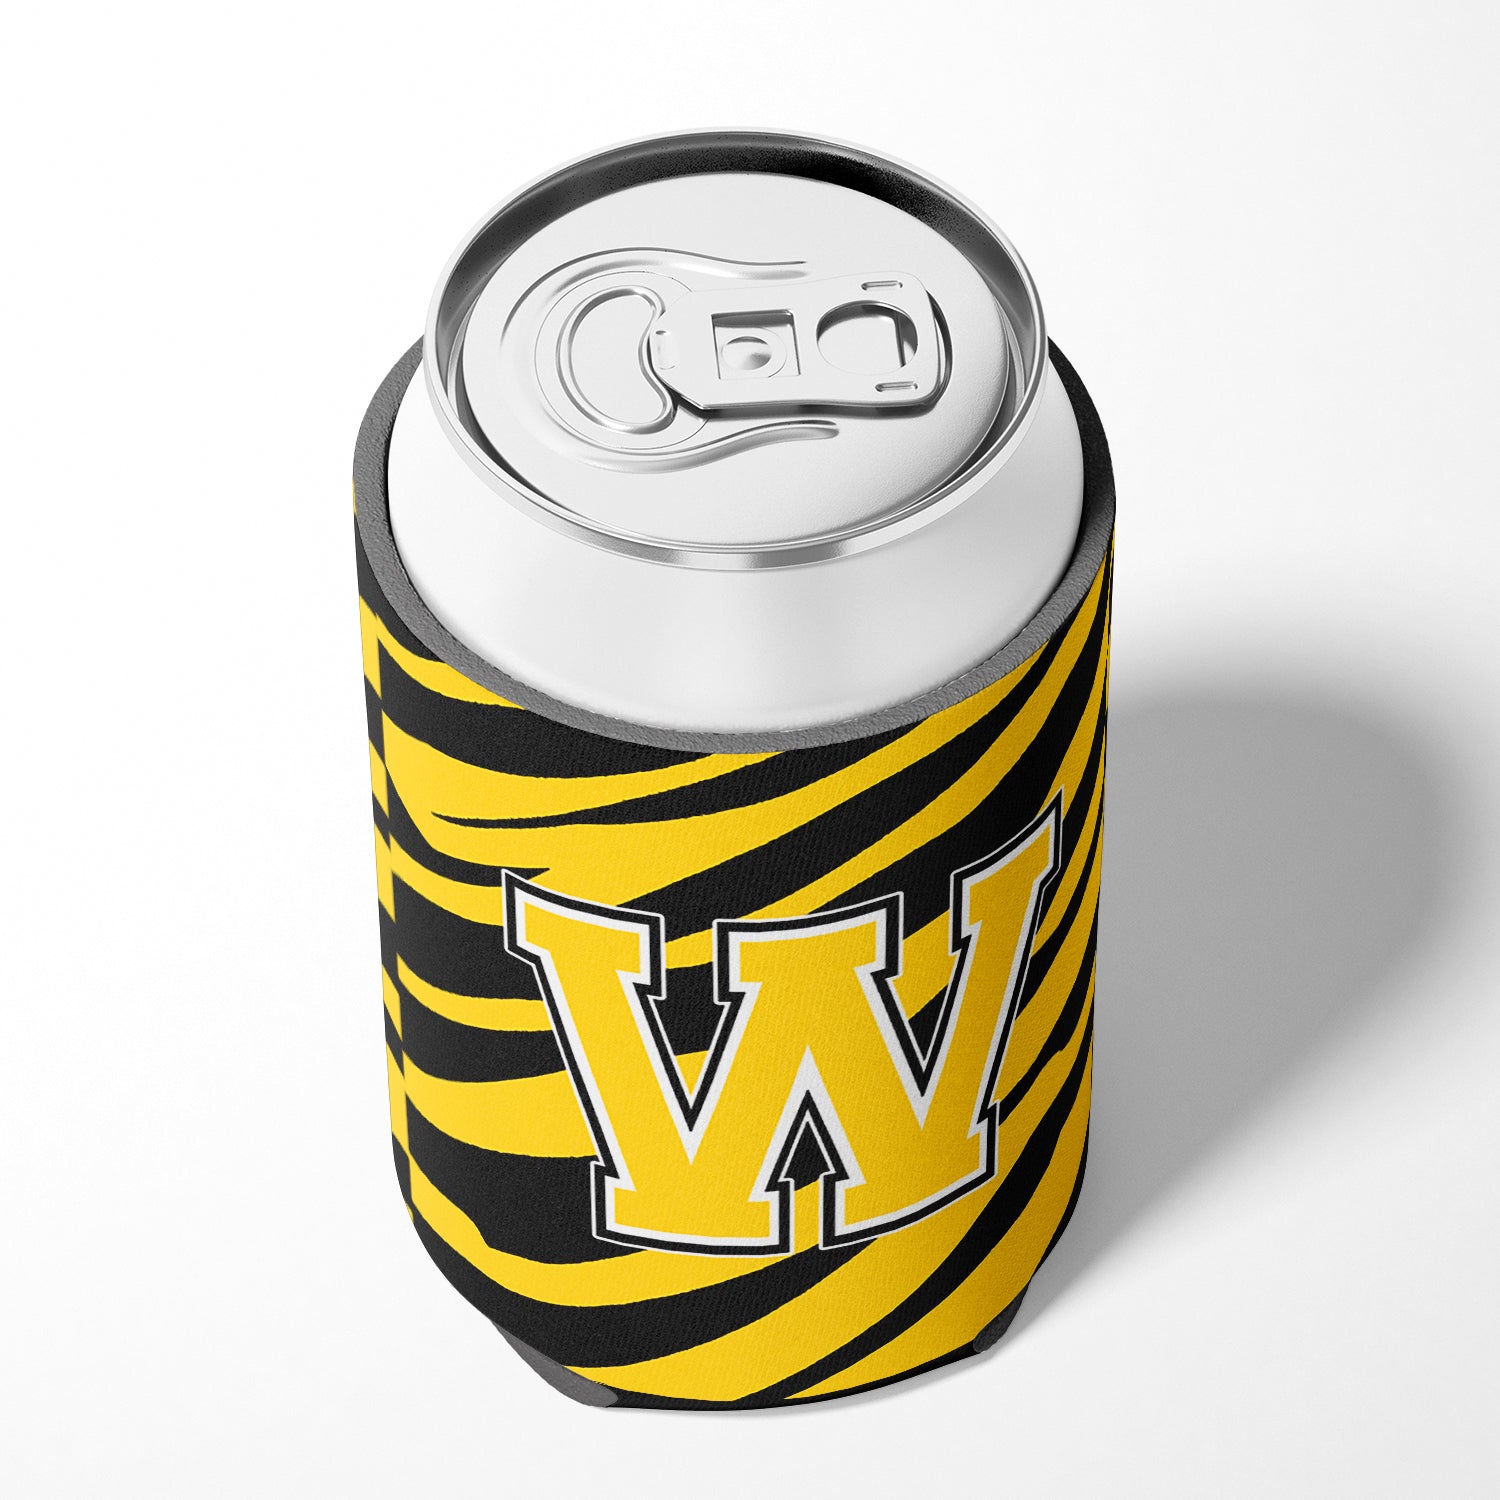 Letter W Initial Monogram - Tiger Stripe - Black Gold Can Beverage Insulator Hugger.